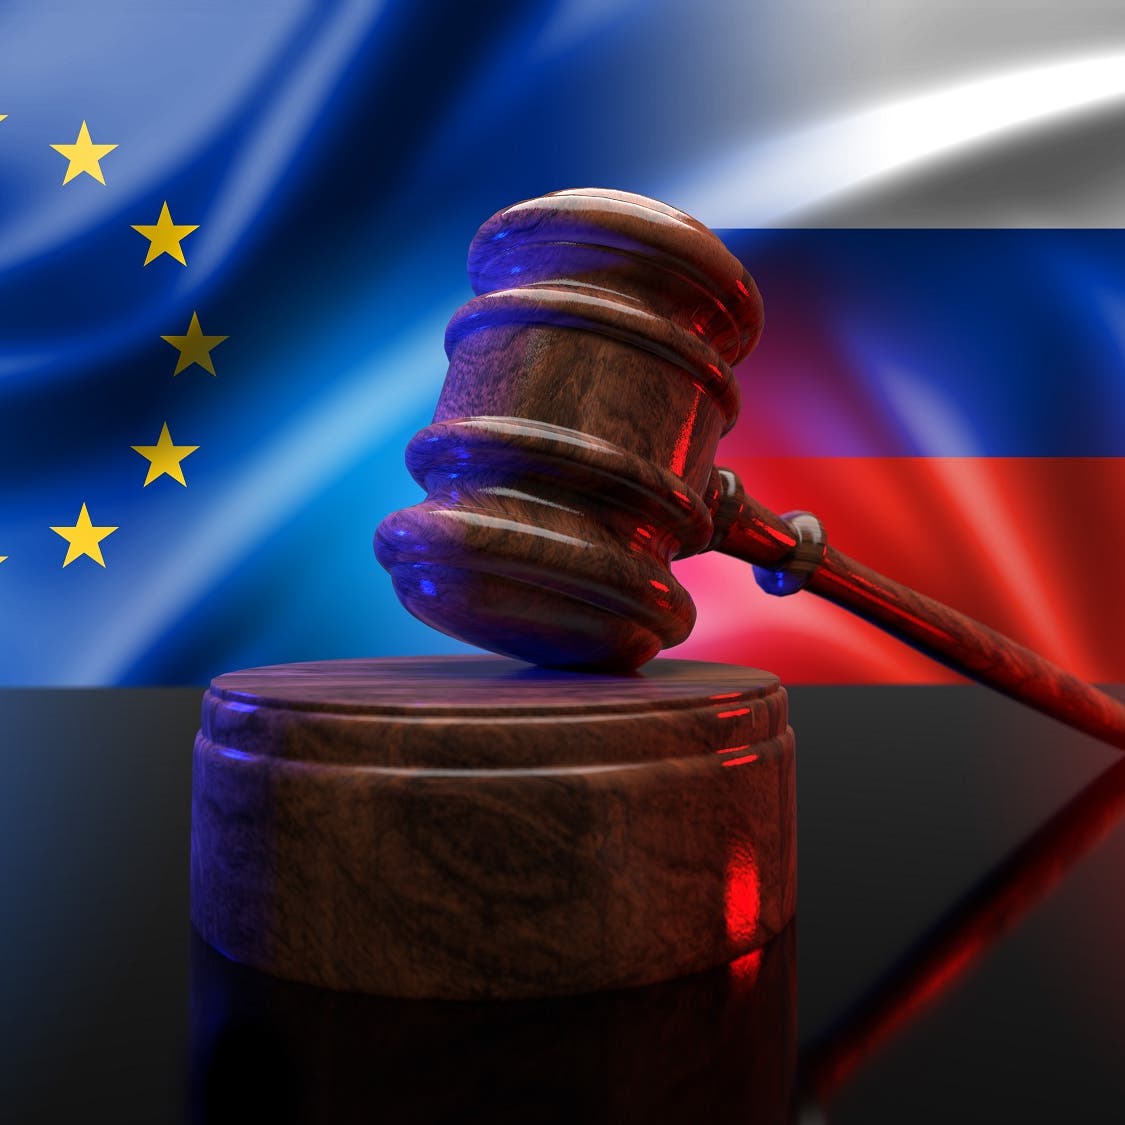 المفوضية الأوروبية تعلن تشديد العقوبات على روسيا لشل قدراتها العسكرية